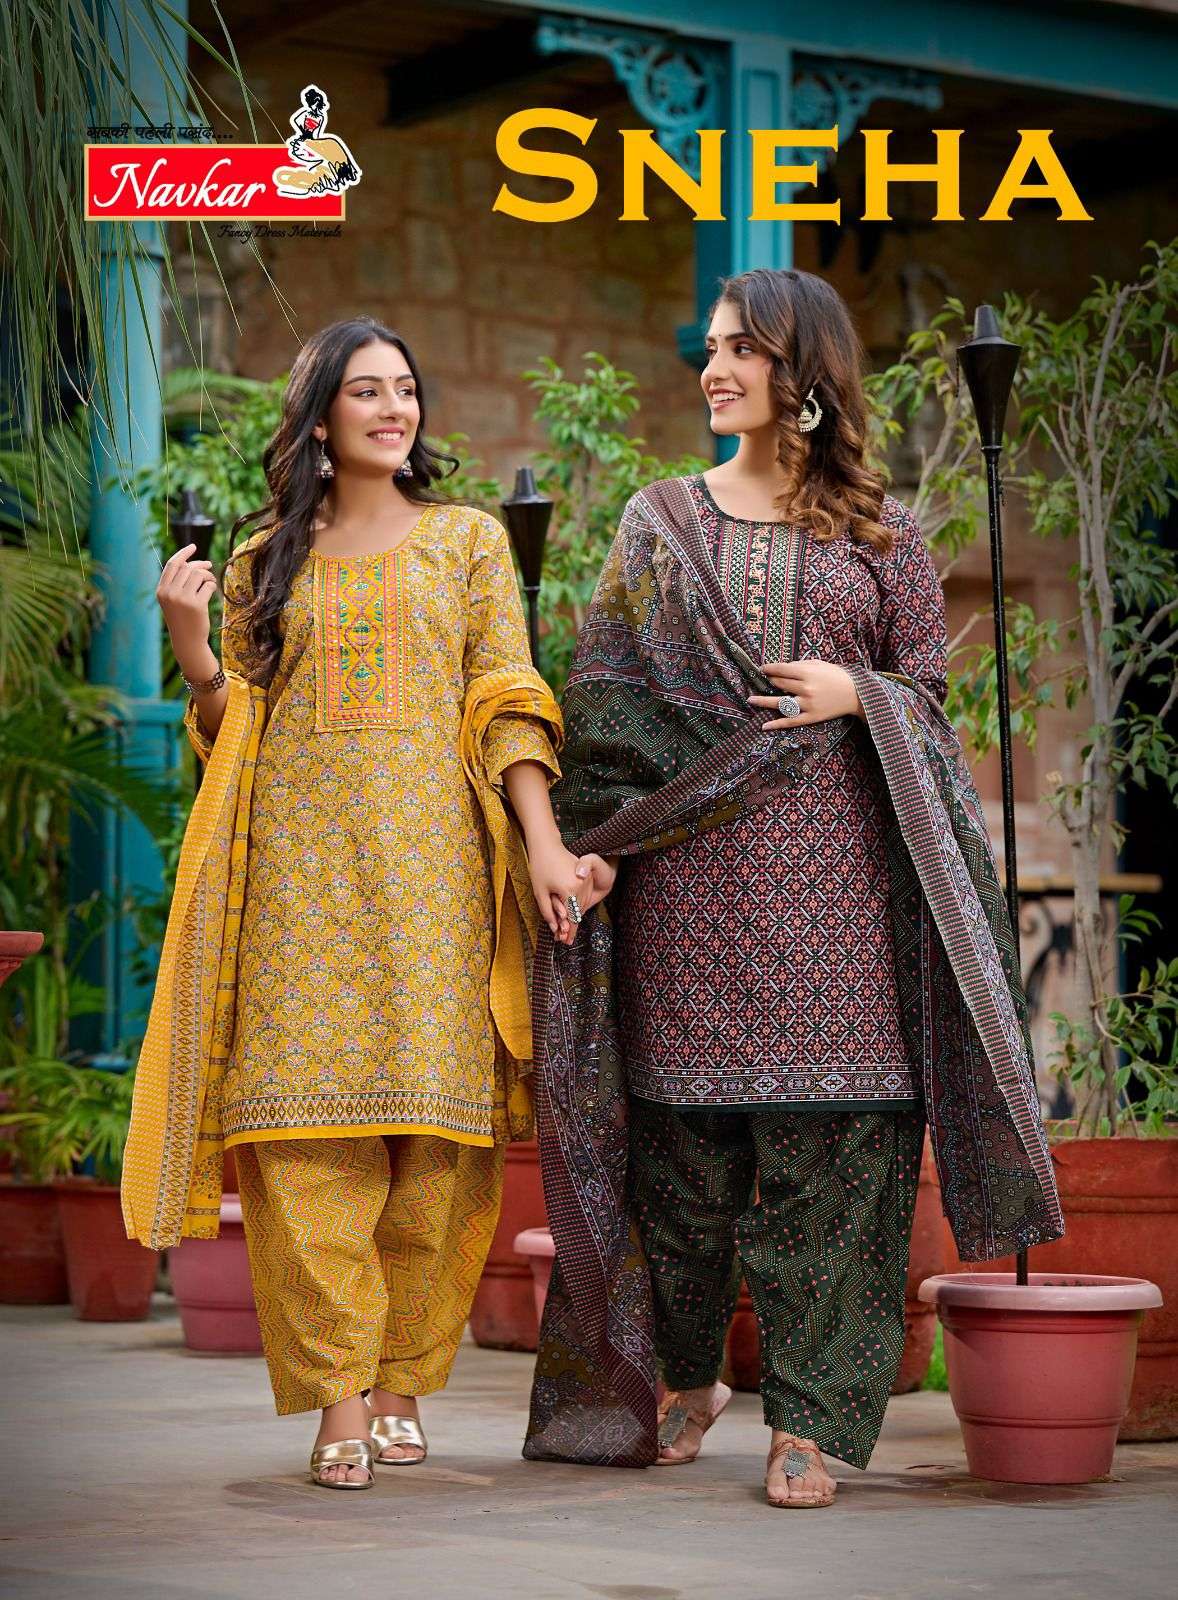 navkar sneha 101-110 series indian designer dress catalogue online dealer surat